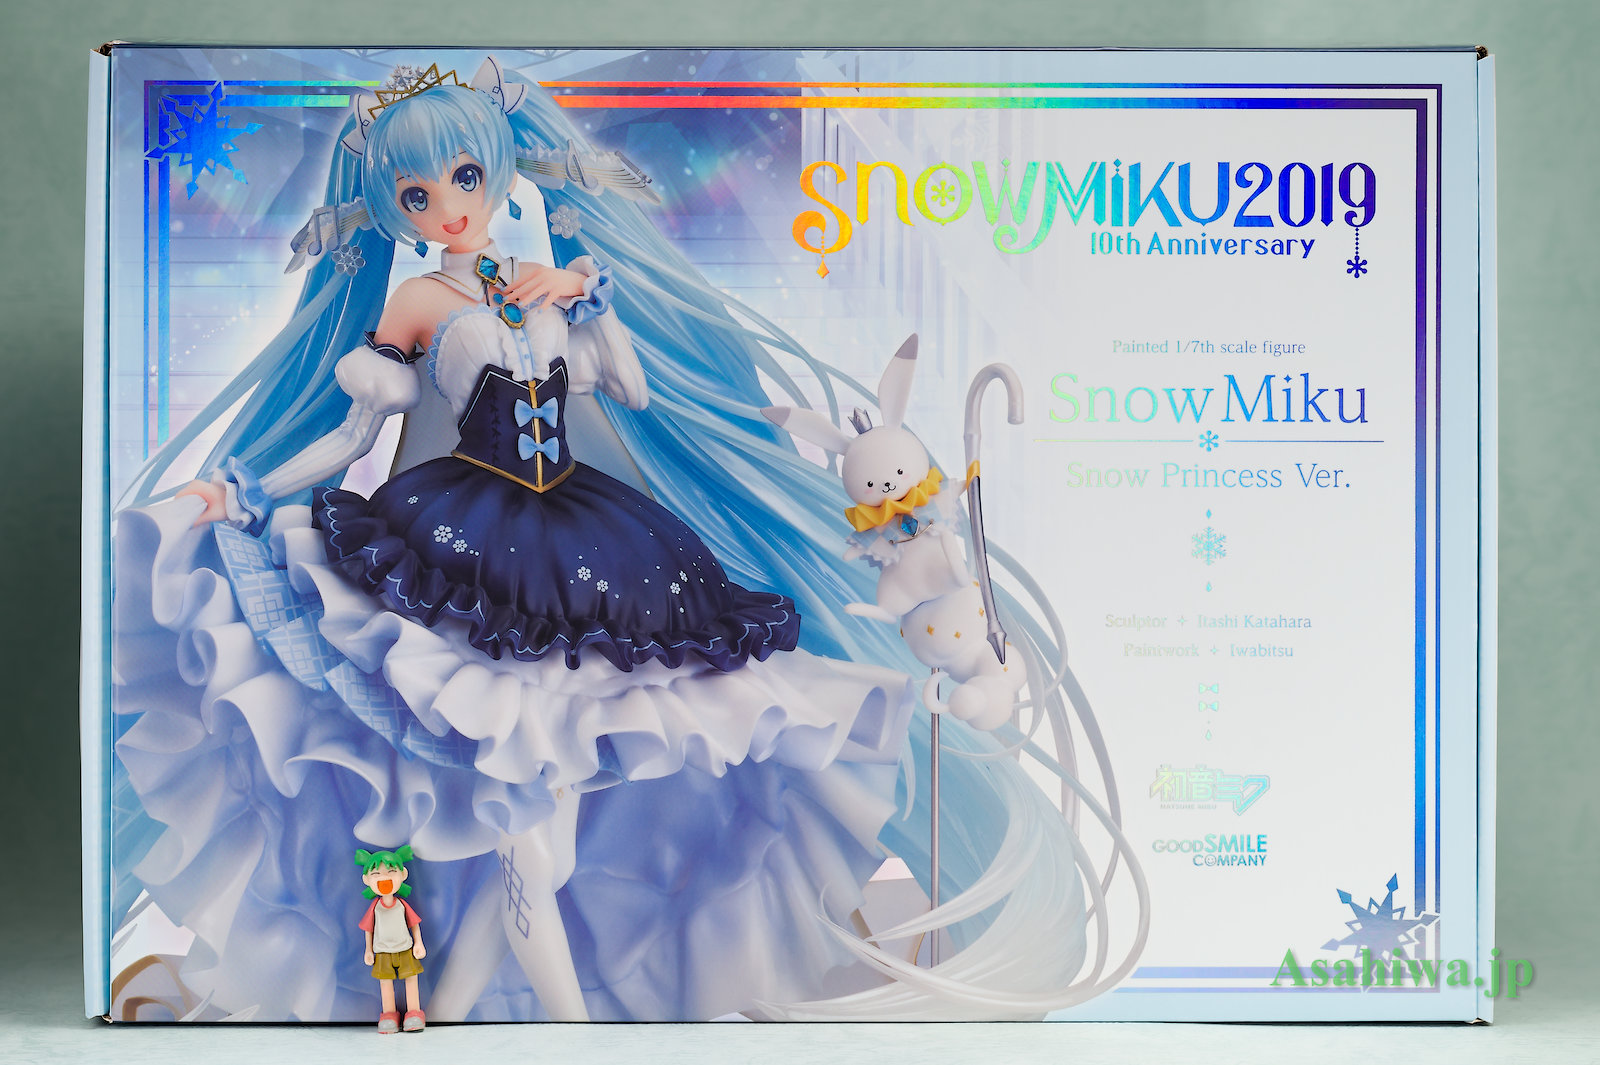 グッドスマイルカンパニー 雪ミク Snow Princess Ver. キャラクター・ボーカル・シリーズ01 初音ミク よつばとフィギュアレビュー